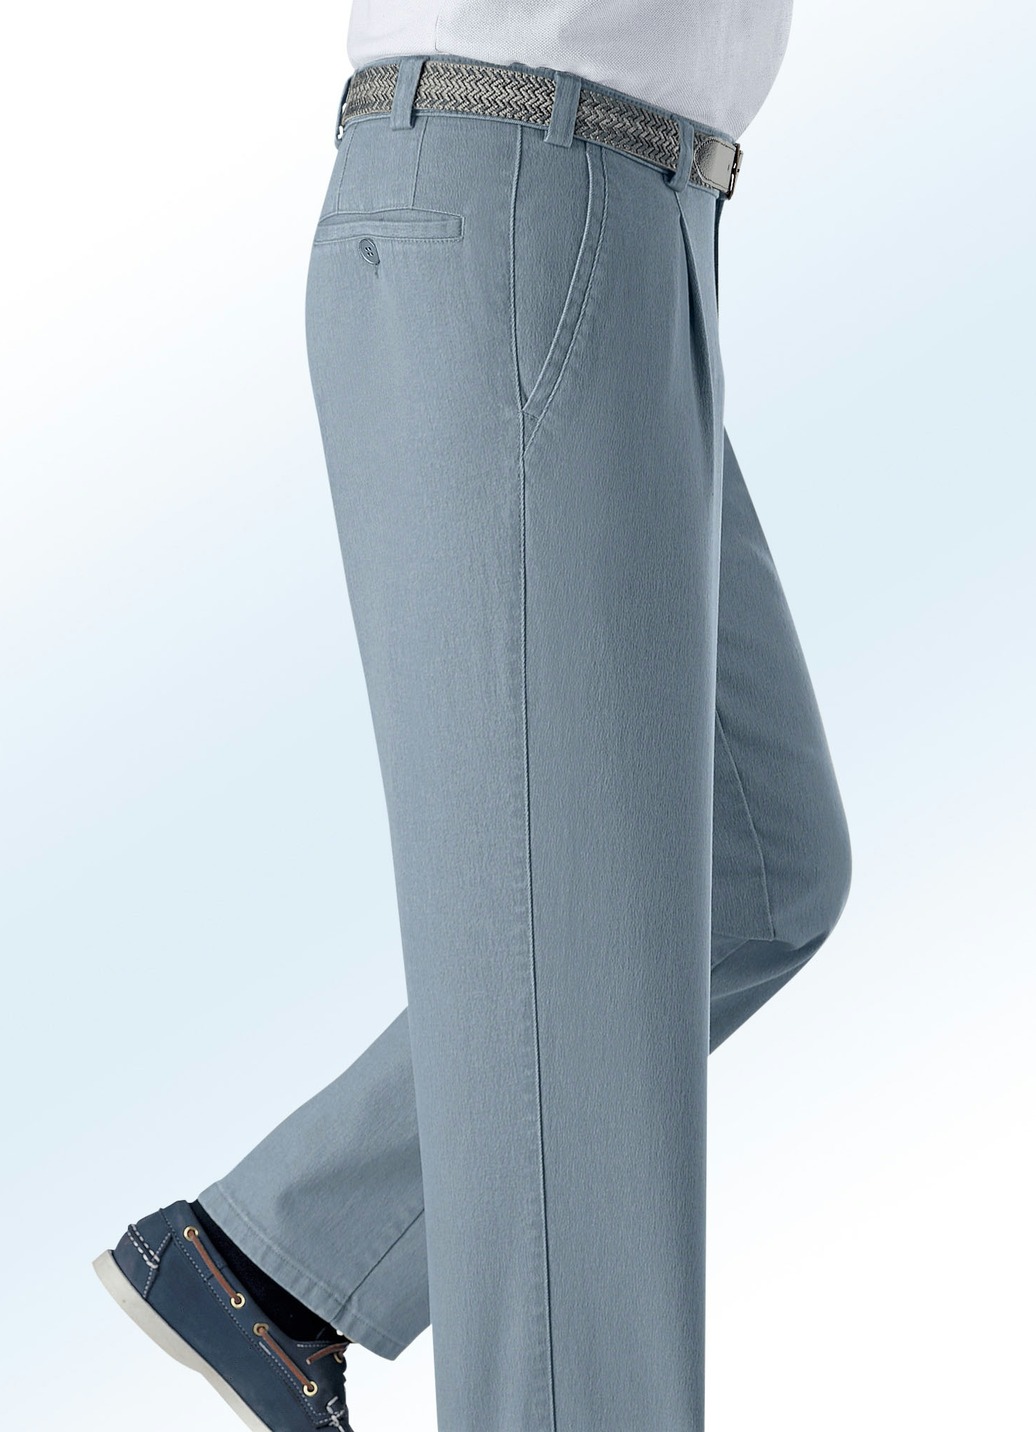 Unterbauch-Jeans mit Gürtel in 3 Farben, Mittelgrau, Größe 54 von BADER